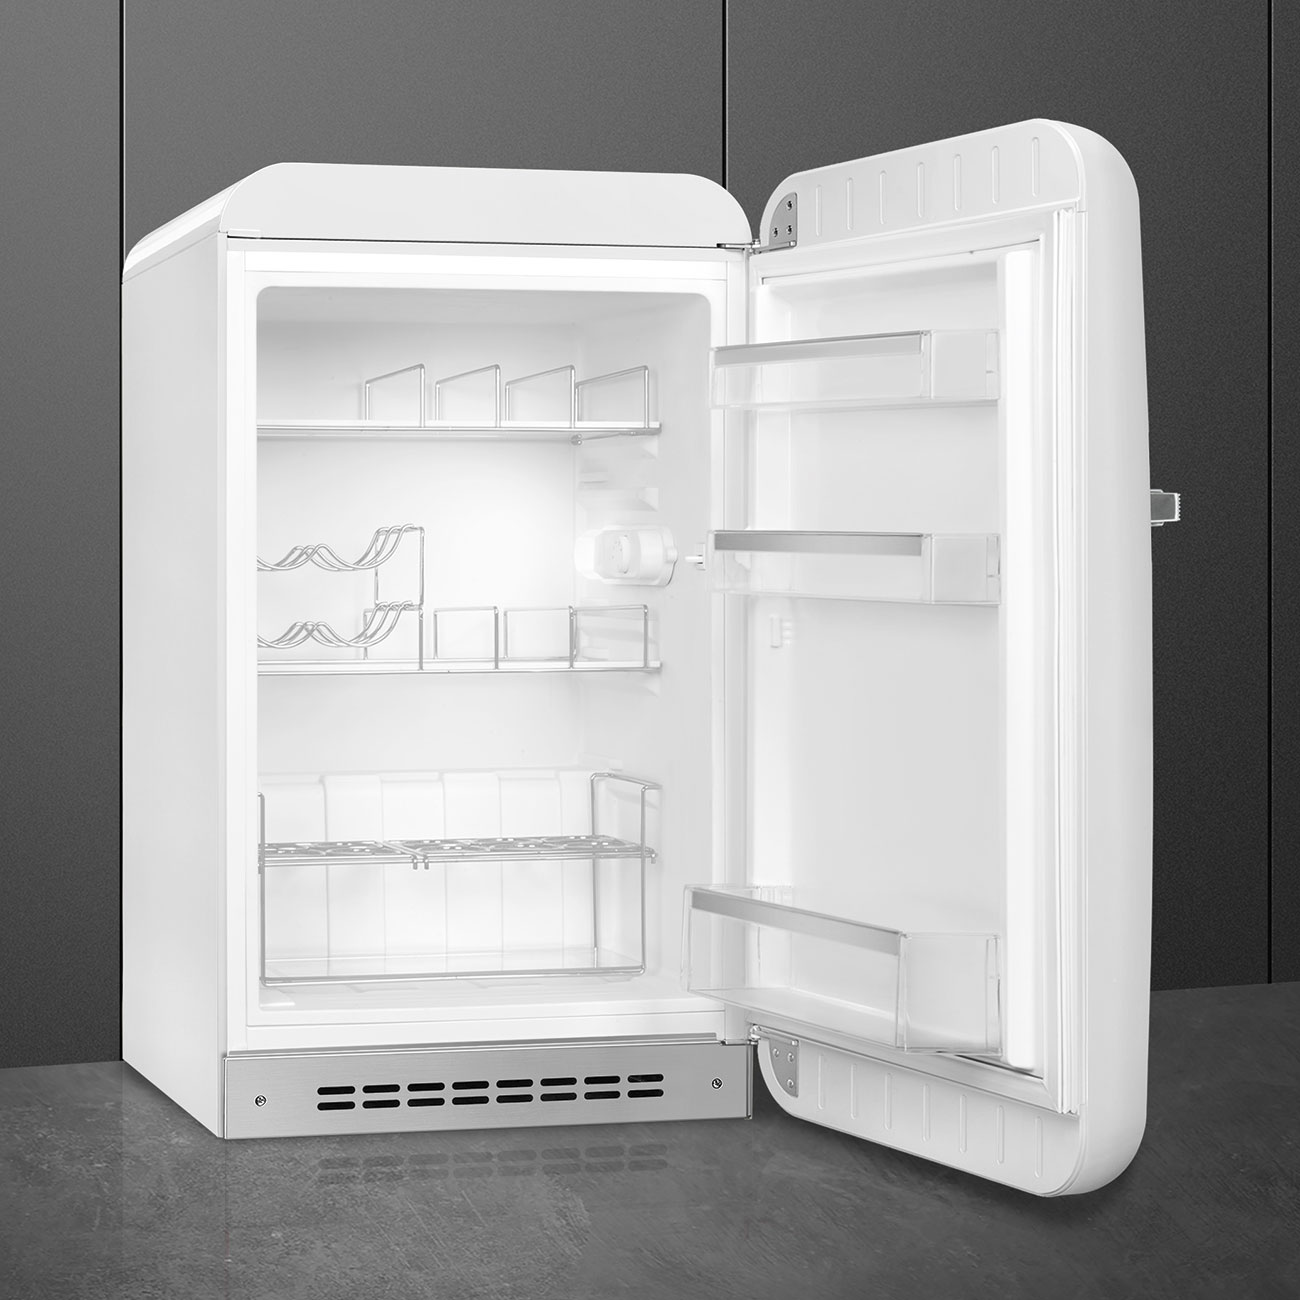 White refrigerator - Smeg_5